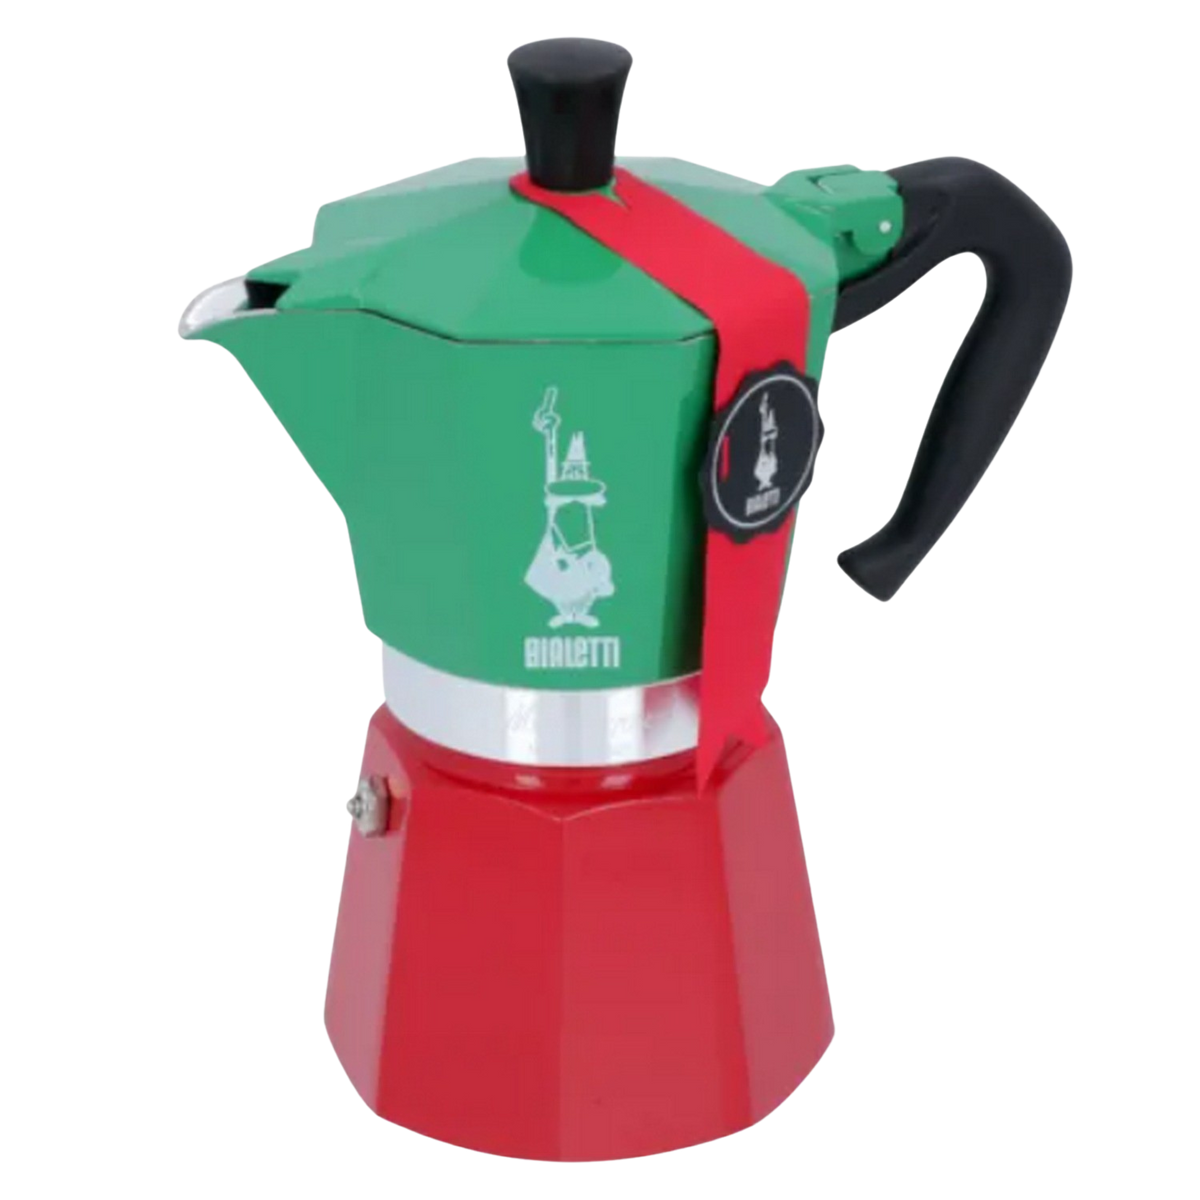 Tassen Rot/Grün/Silber ITALIA 6 Moka BIALETTI Espressokocher Express für